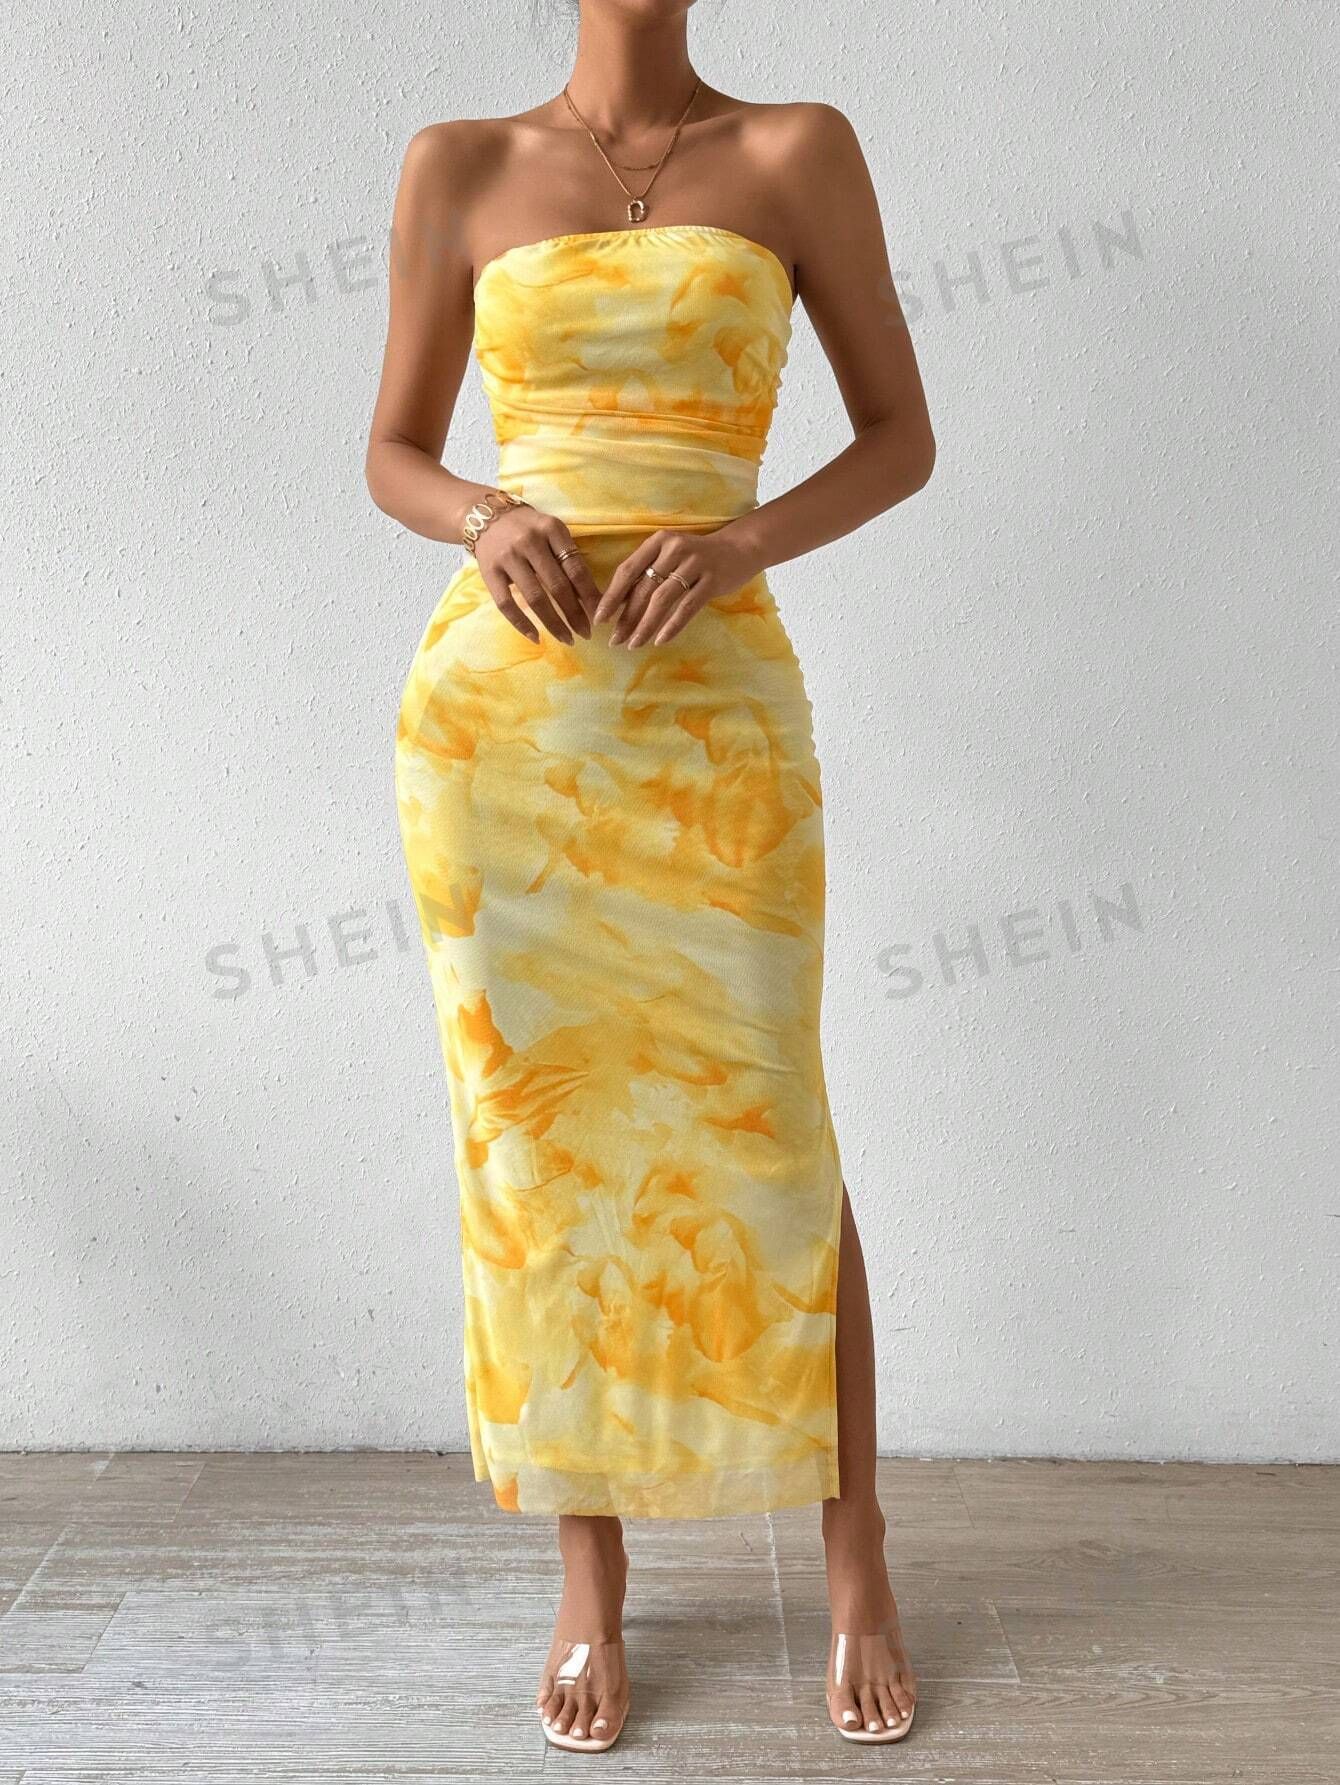 SHEIN BAE Ladies' Tie Dye Strapless Dress With Side Slit Hem | SHEIN